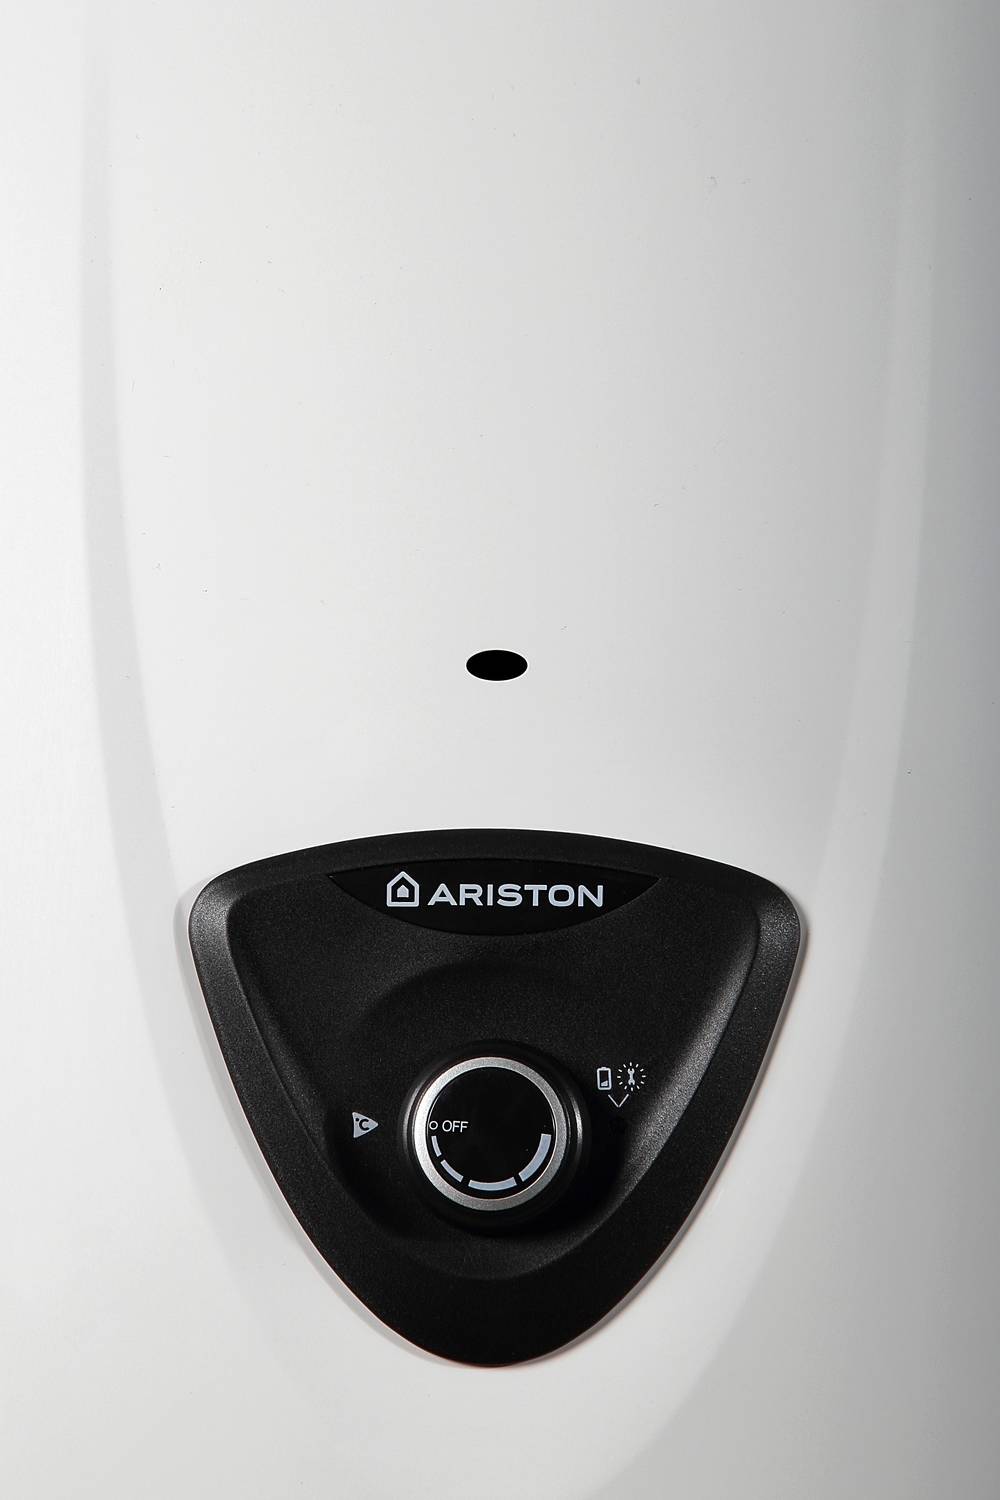 Как отремонтировать водонагреватель аристон самостоятельно. ремонт водонагревателей аристон (ariston)